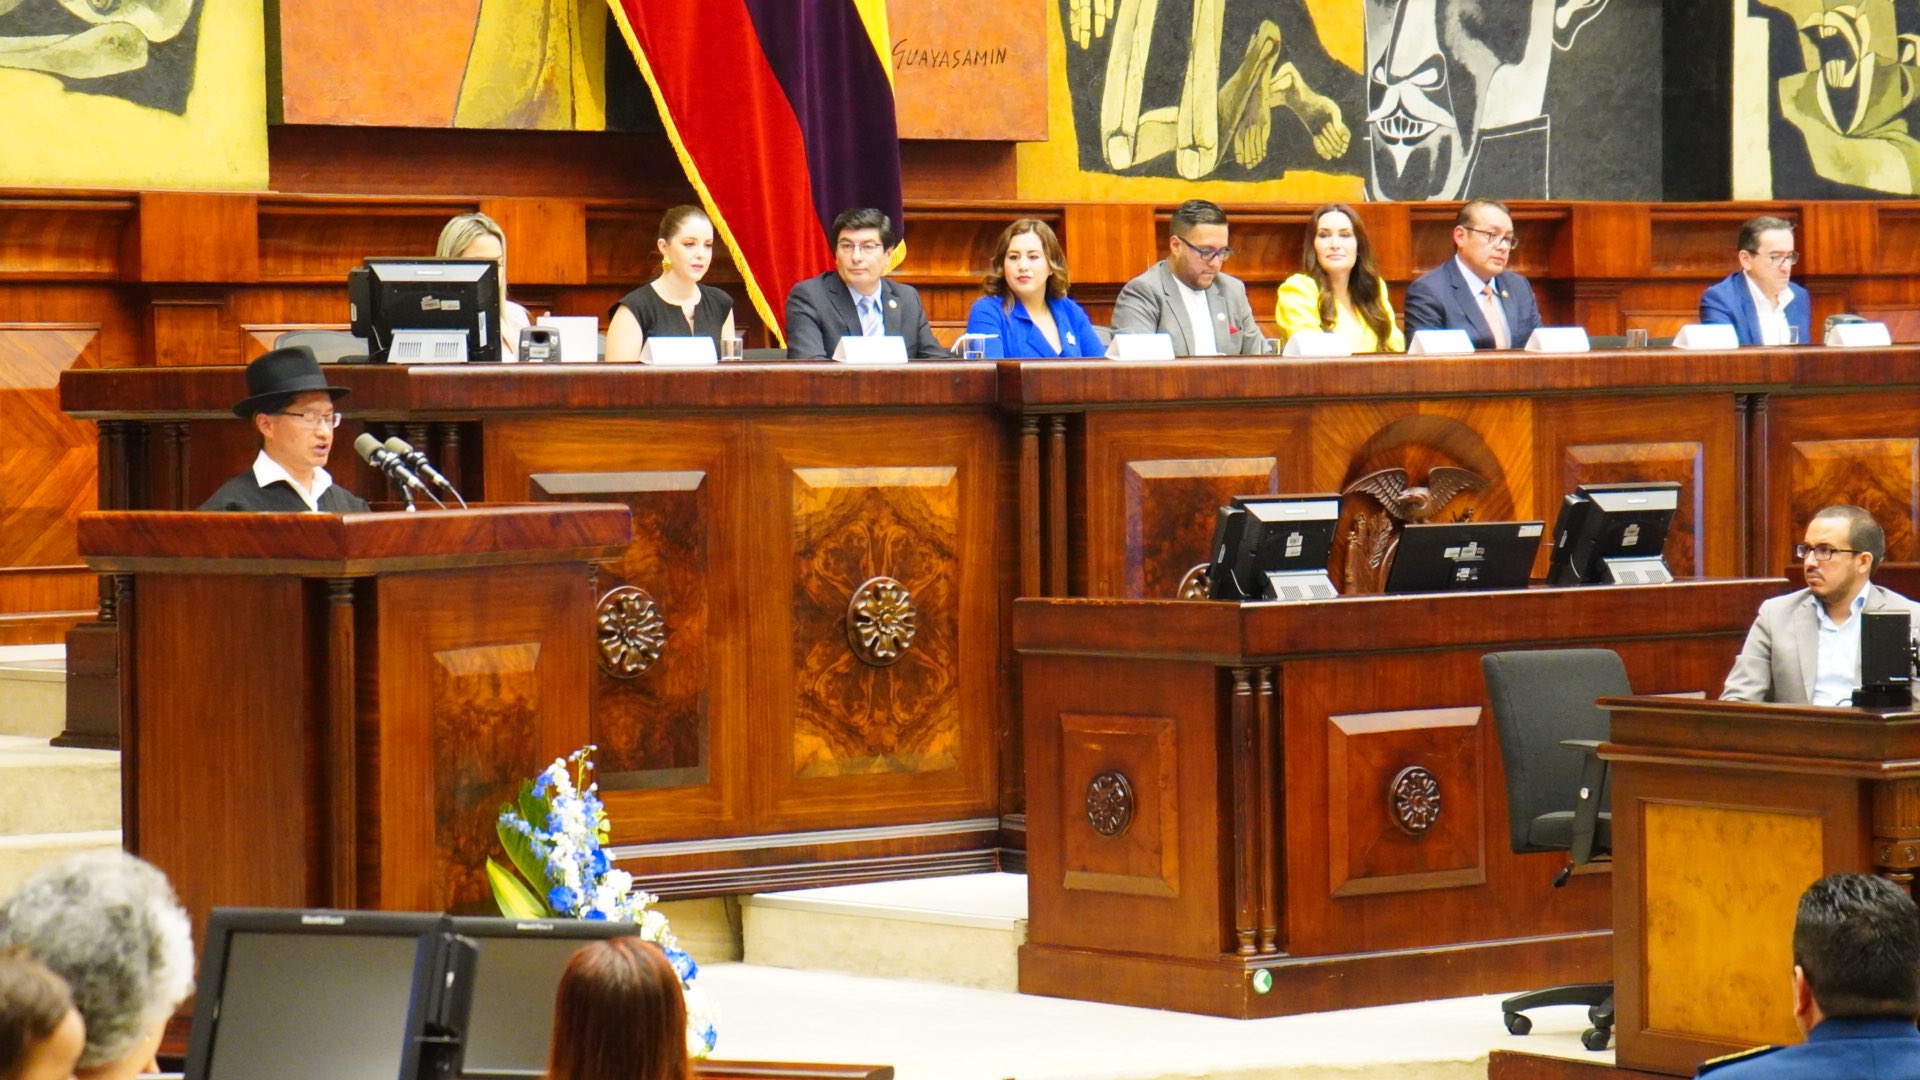 ESTRATEGIA. Juan Fernando Flores (CREO) en la mesa principal (de saco plomo y lentes) durante un evento de rendición de cuentas en el Pleno de la Asamblea.